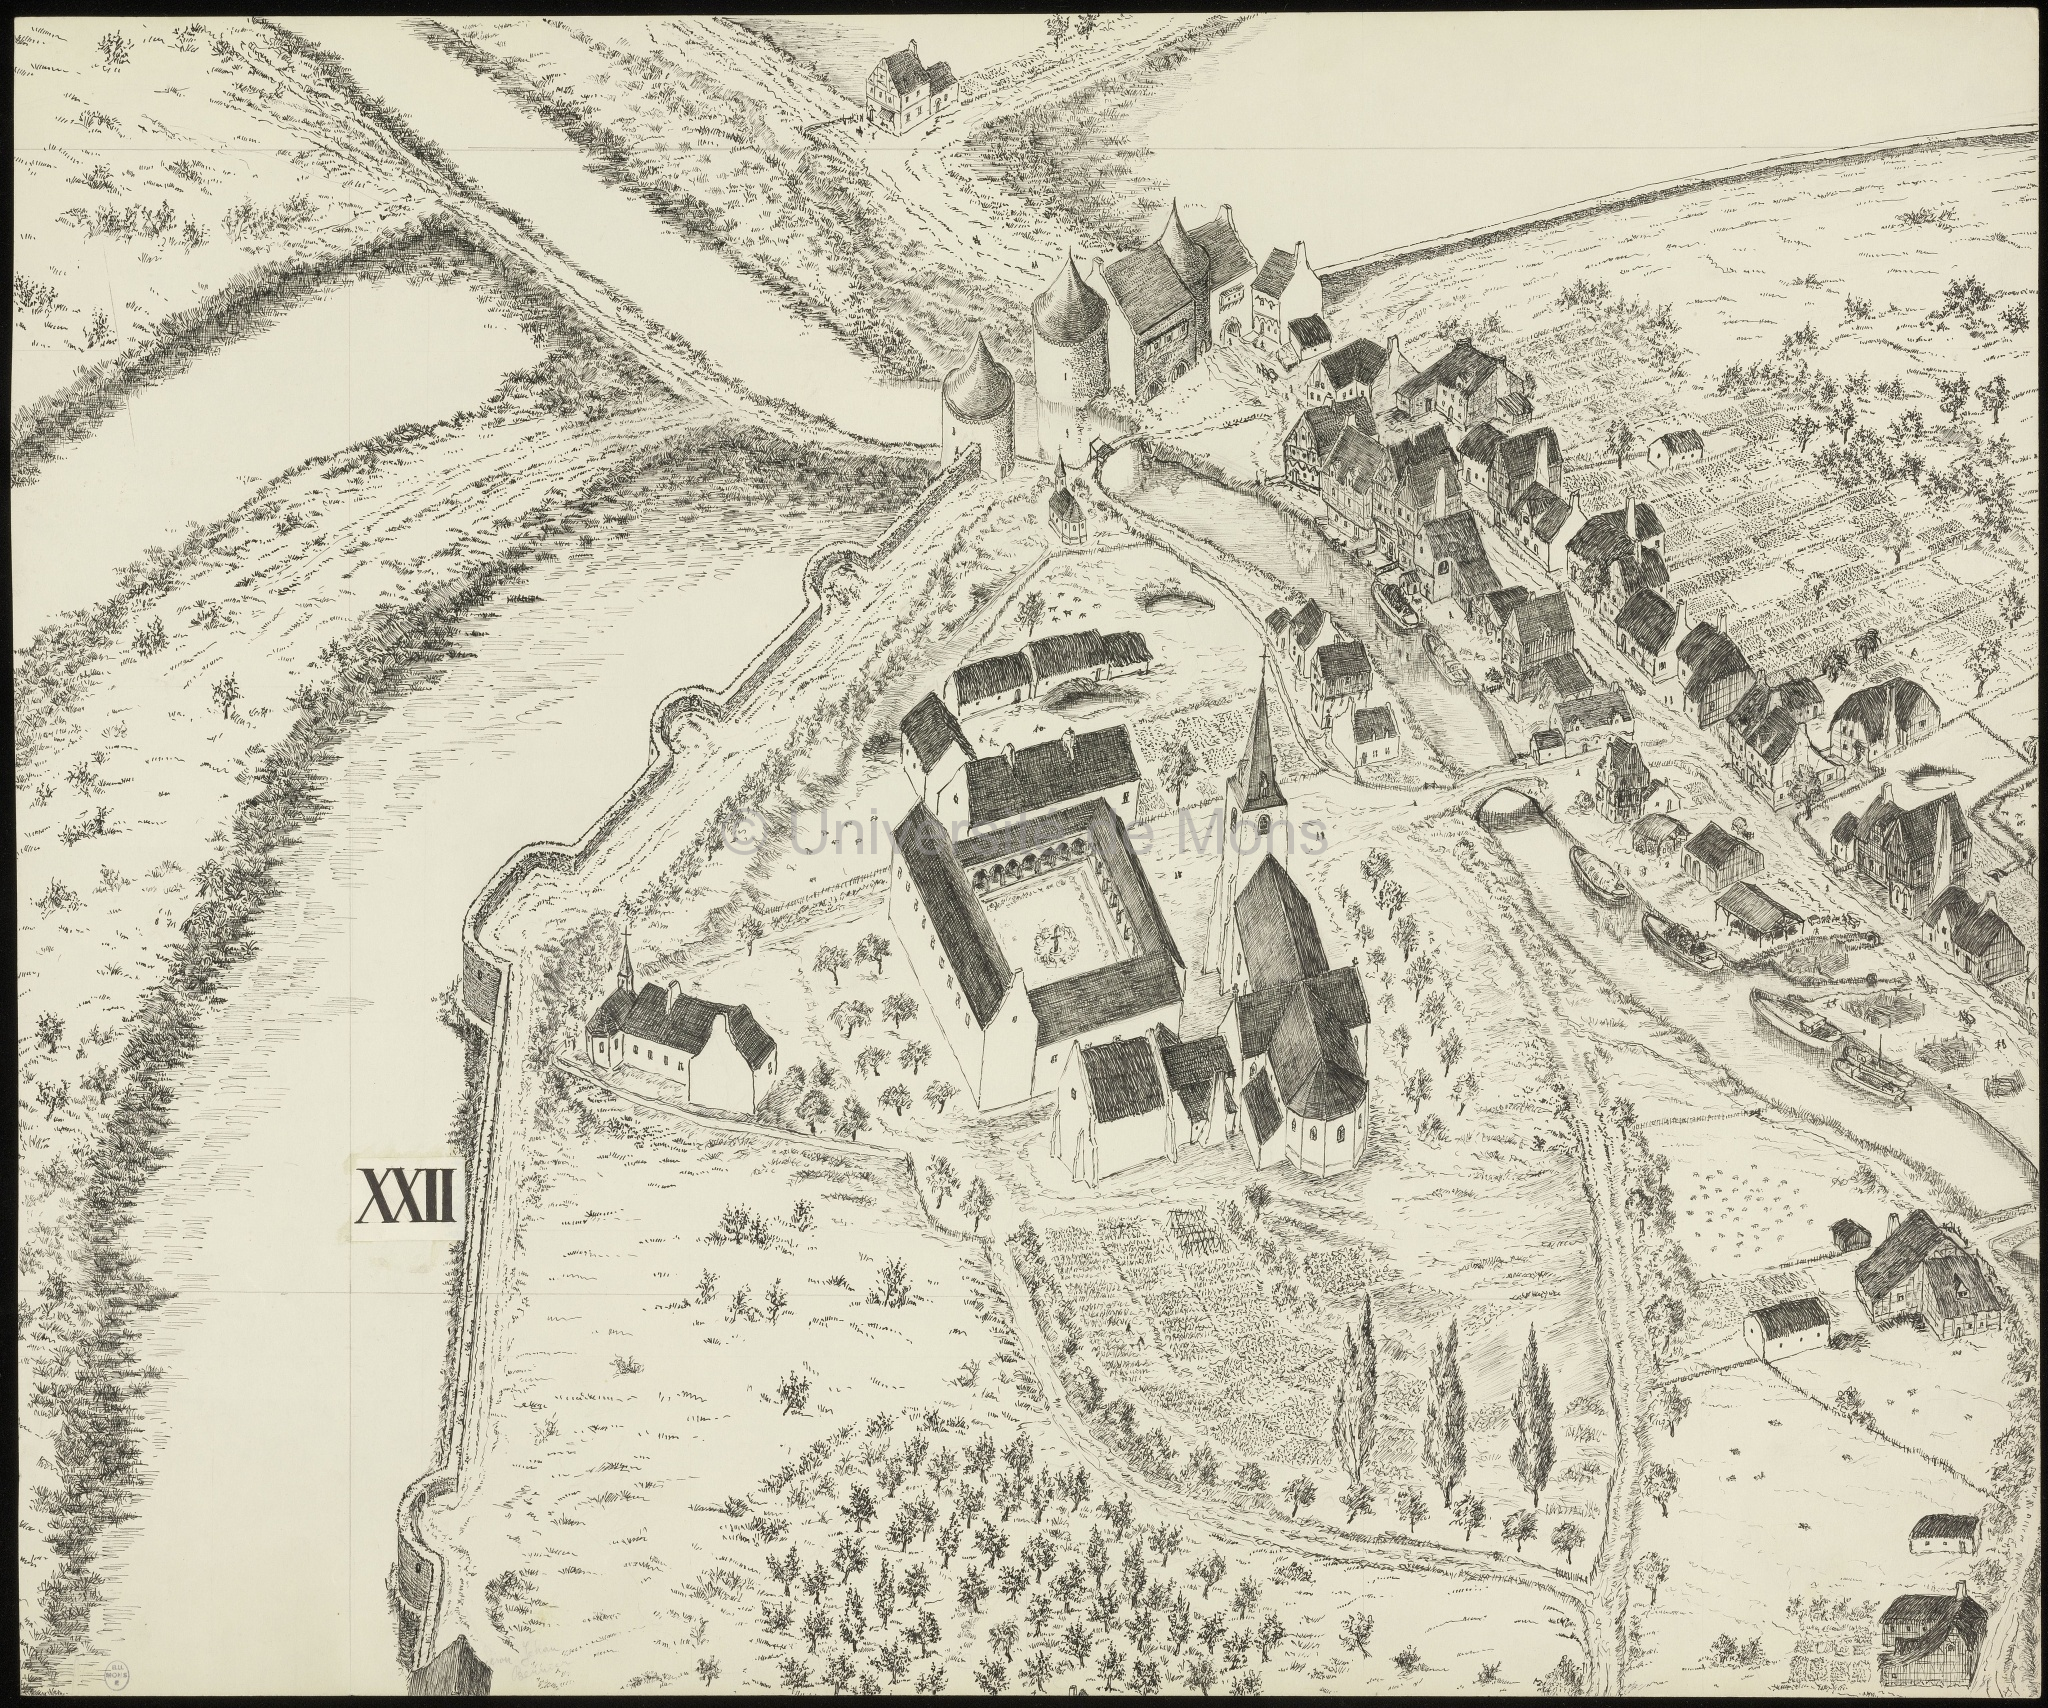 Reconstitution en vue perspective de la ville de Mons en 1550 : planche XXII